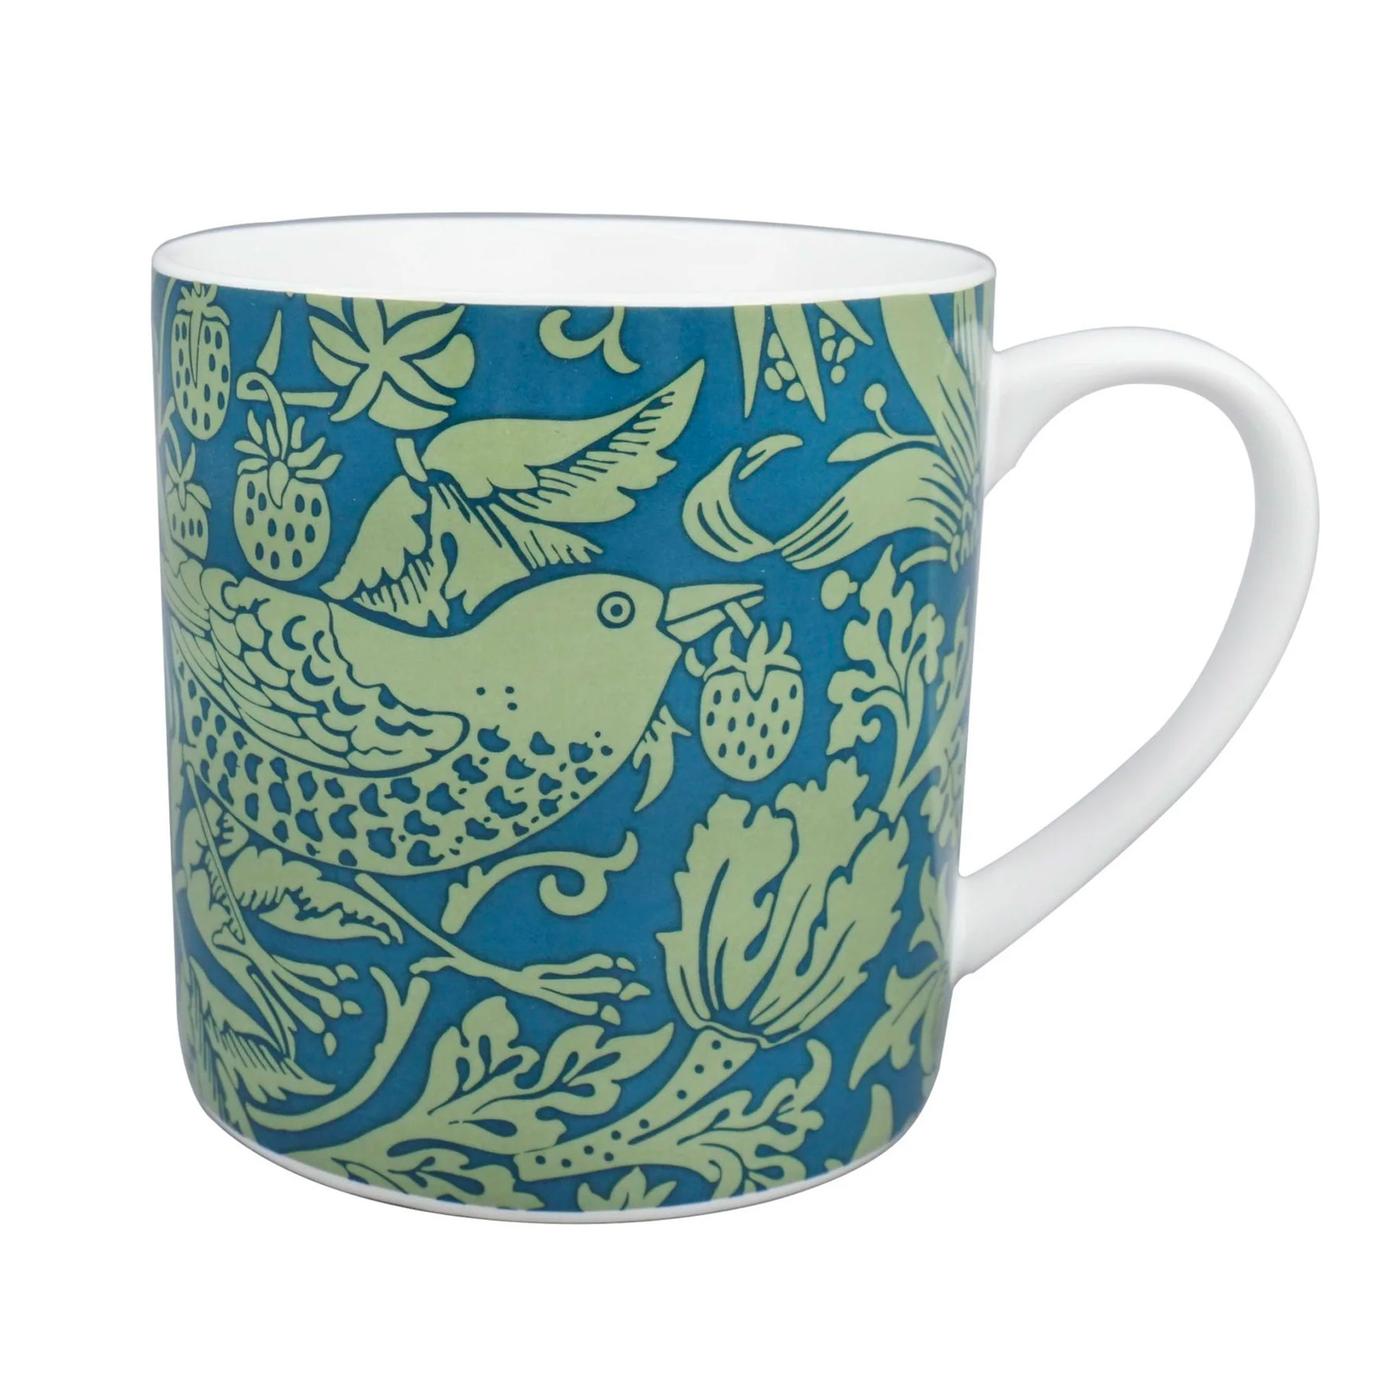 William Morris Classic Folk Art Ceramic Mug S